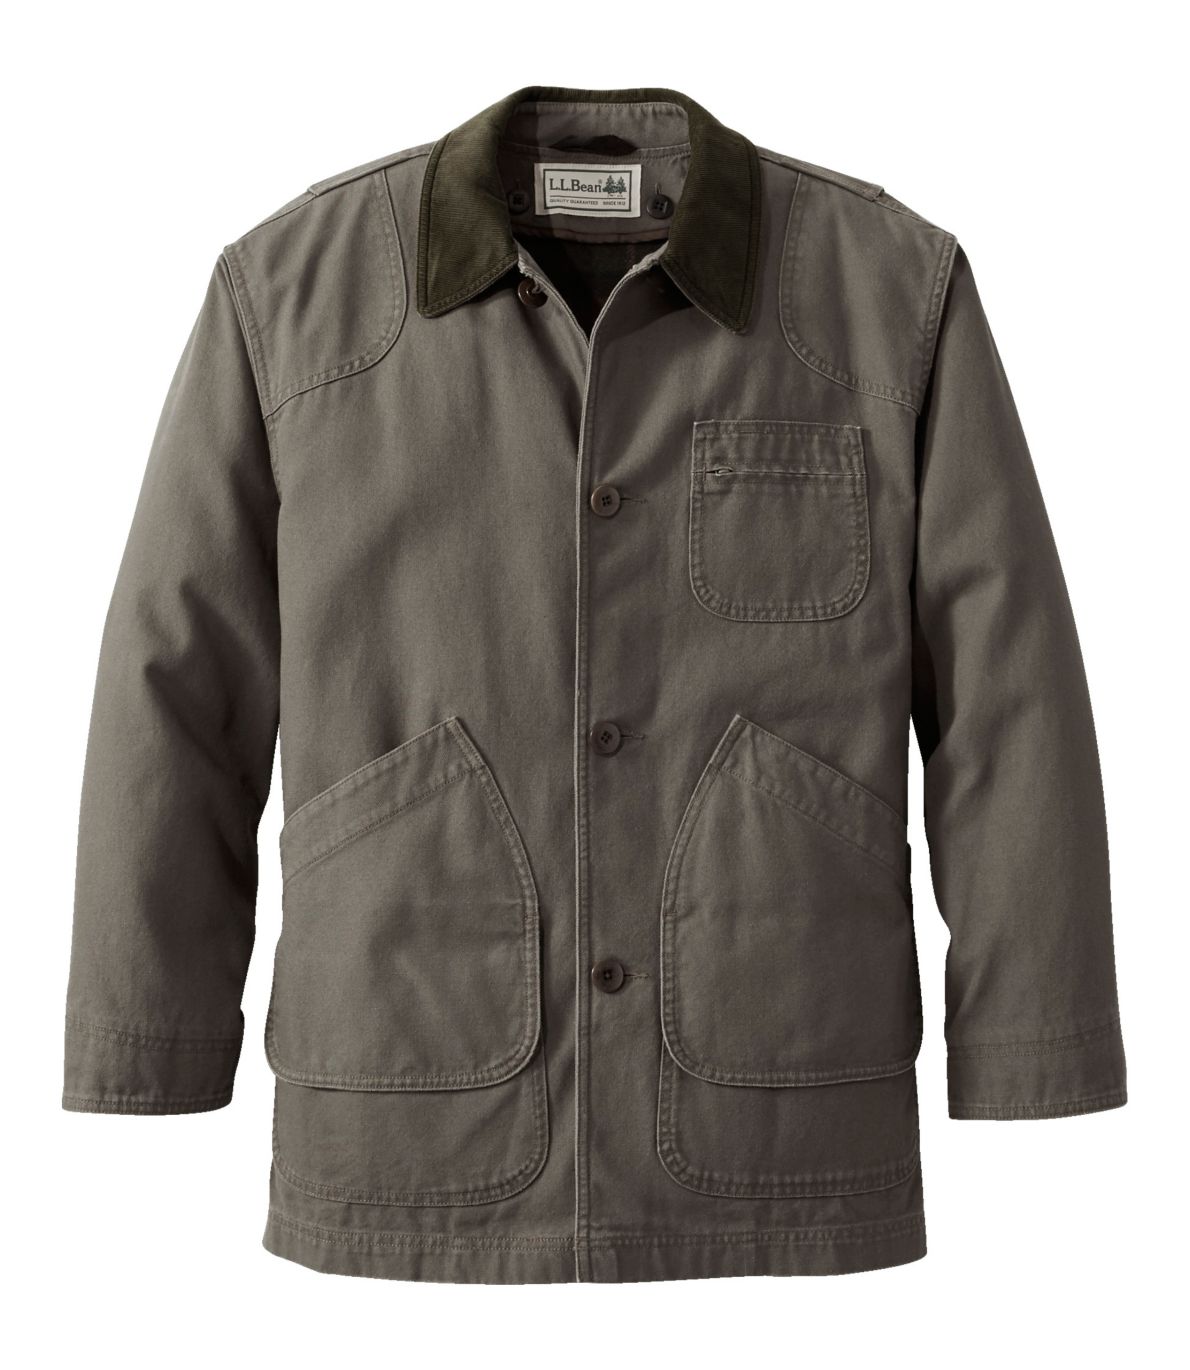 Men's Original Field Coat with Wool/Nylon Liner